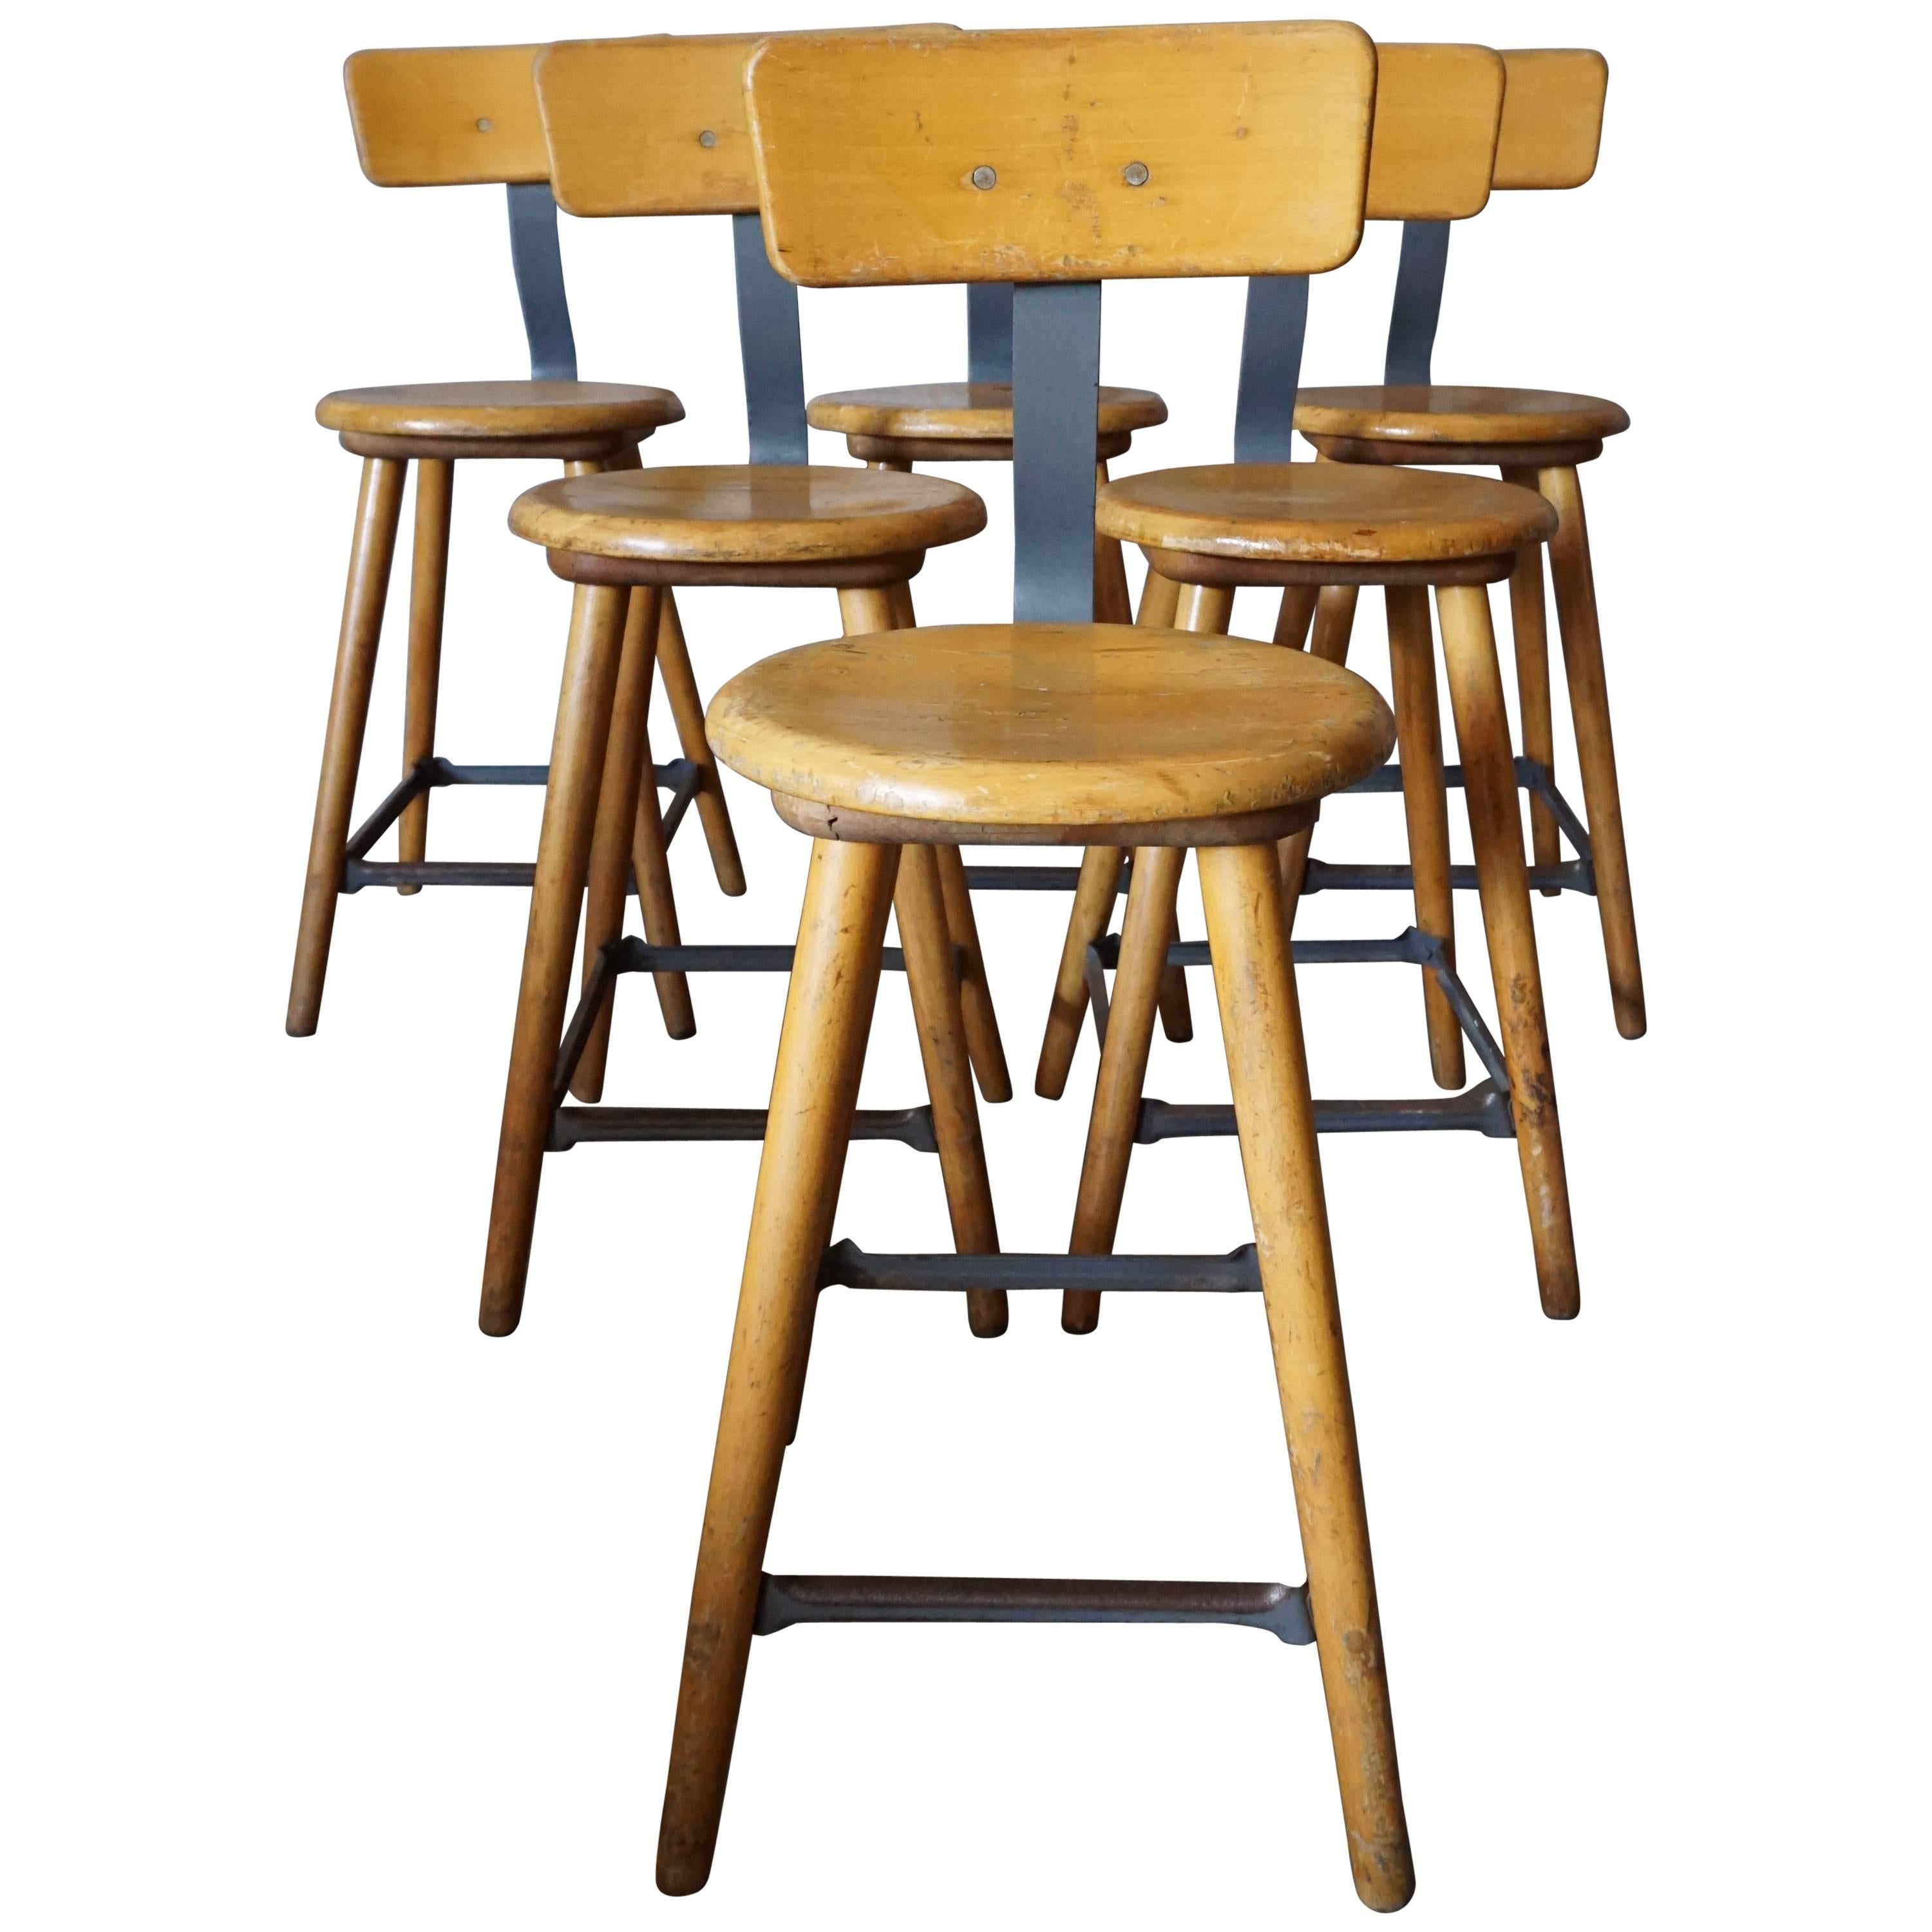 German Industrial Workshop Chair / Bar Stool